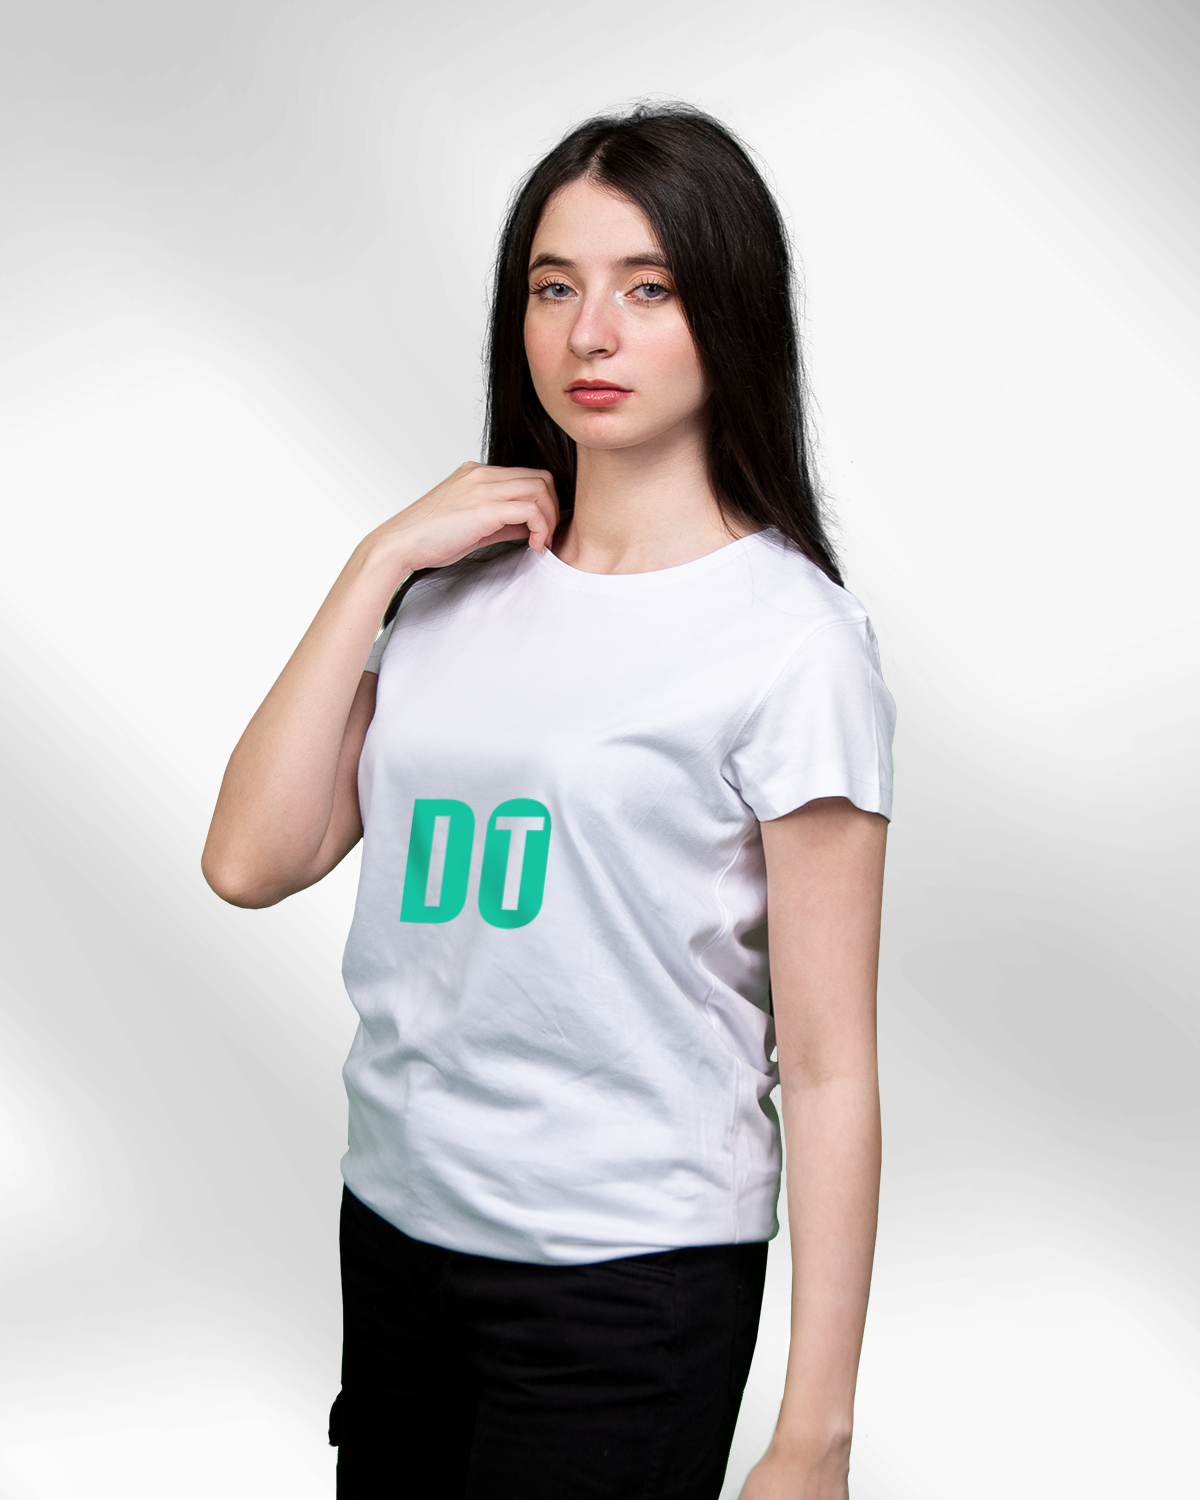 Women’s T-shirt (DO IT)